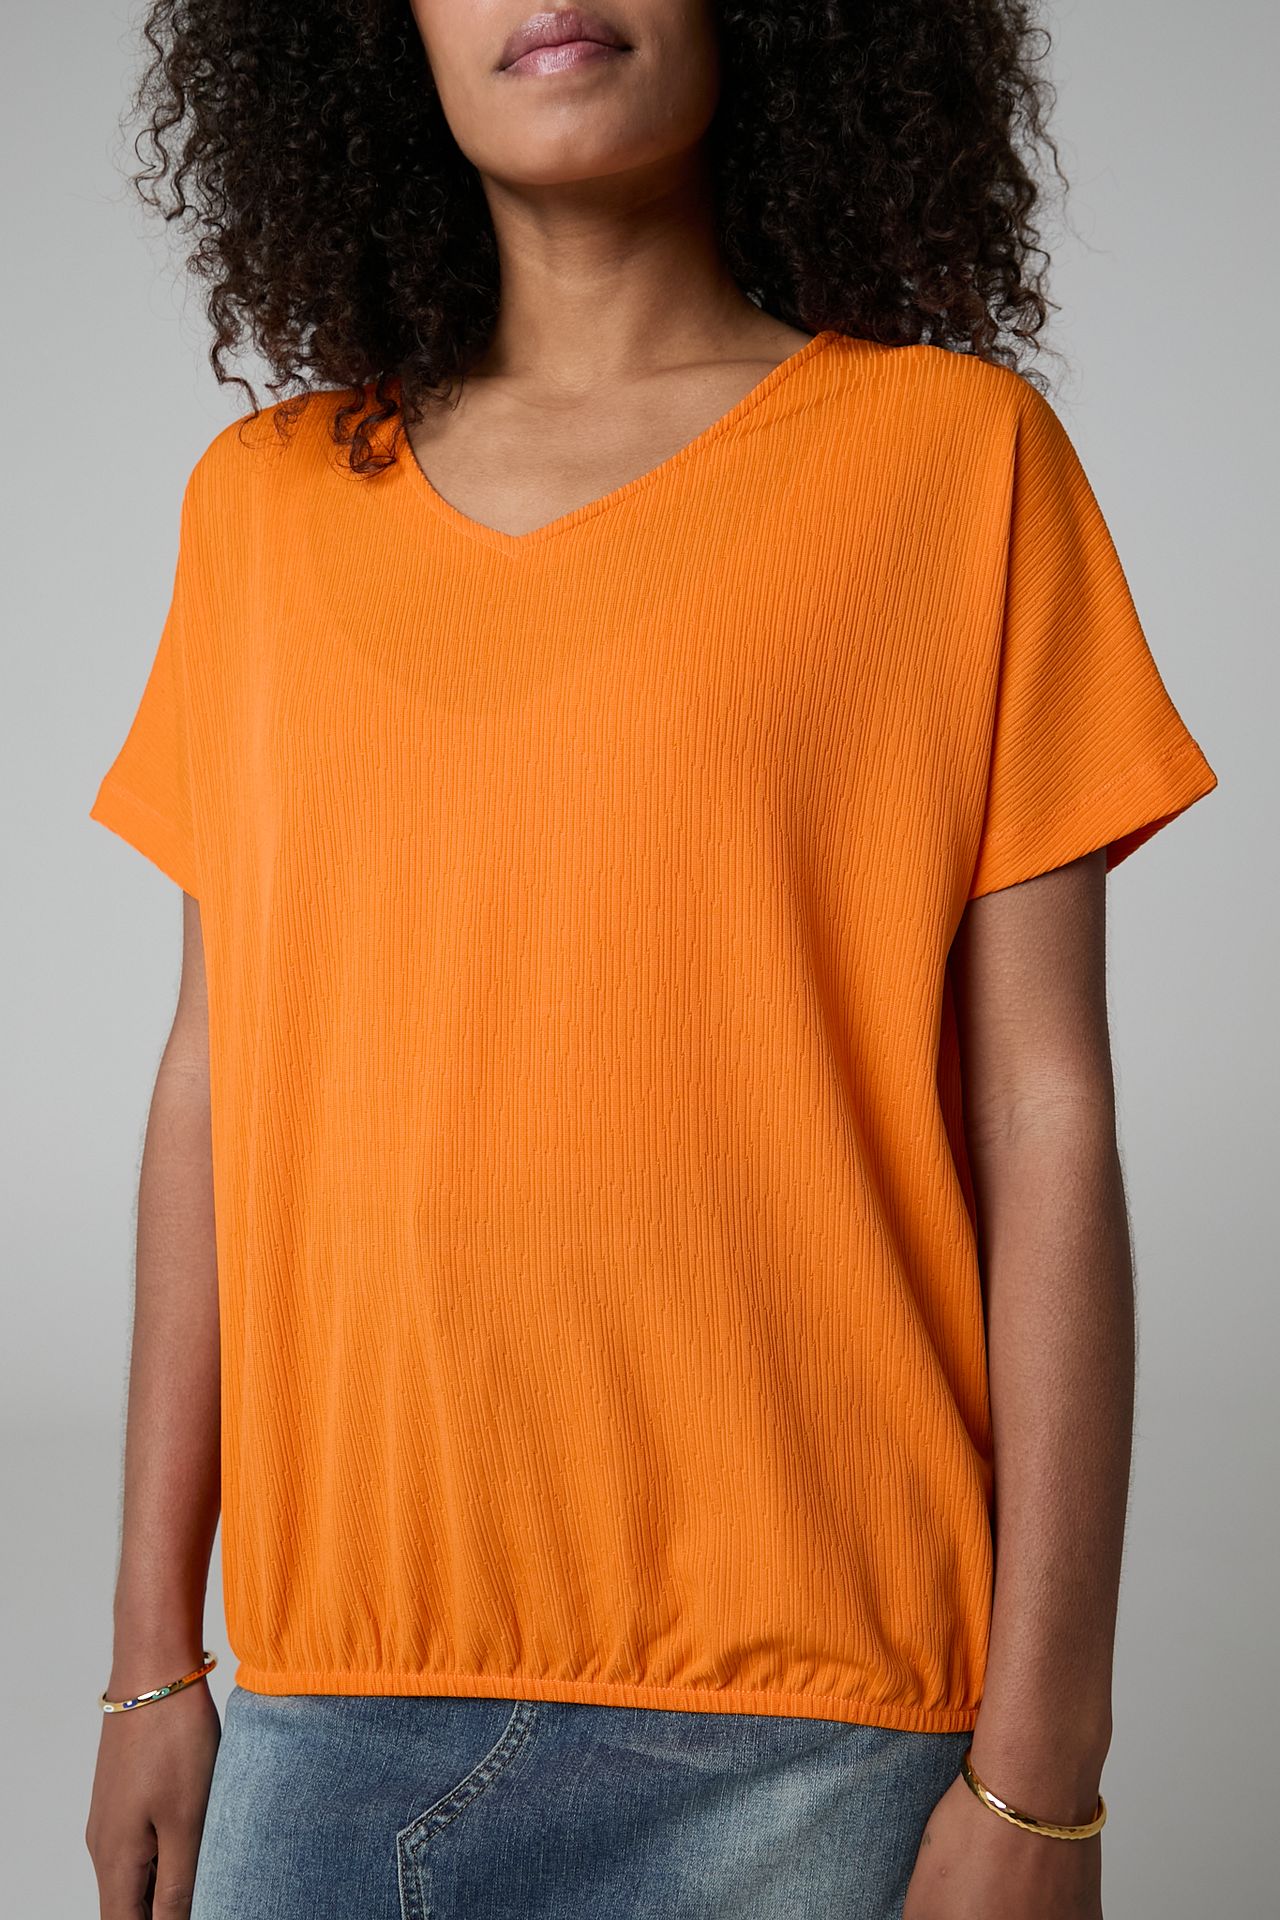 Norah Oranje shirt orange 211648-700